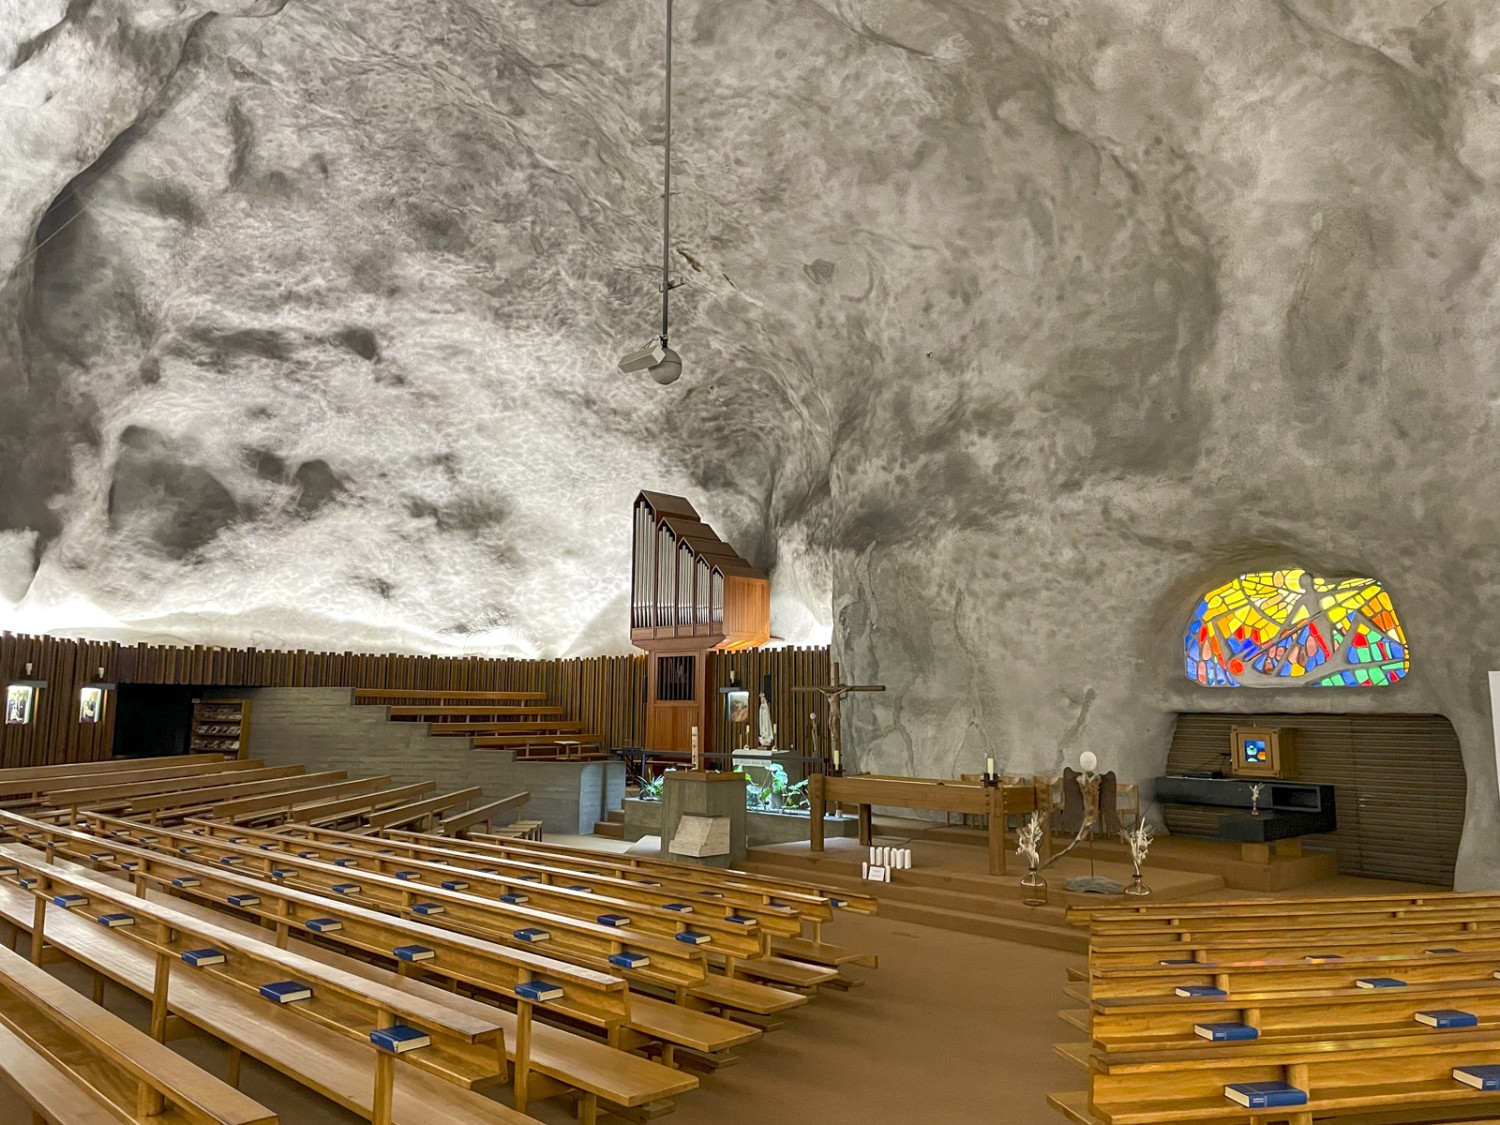 6000 mètres cubes de pierre ont été excavés pour l’église creusée dans la roche, soit le contenu de trois piscines de 50 mètres. Photo: Rémy Kappeler